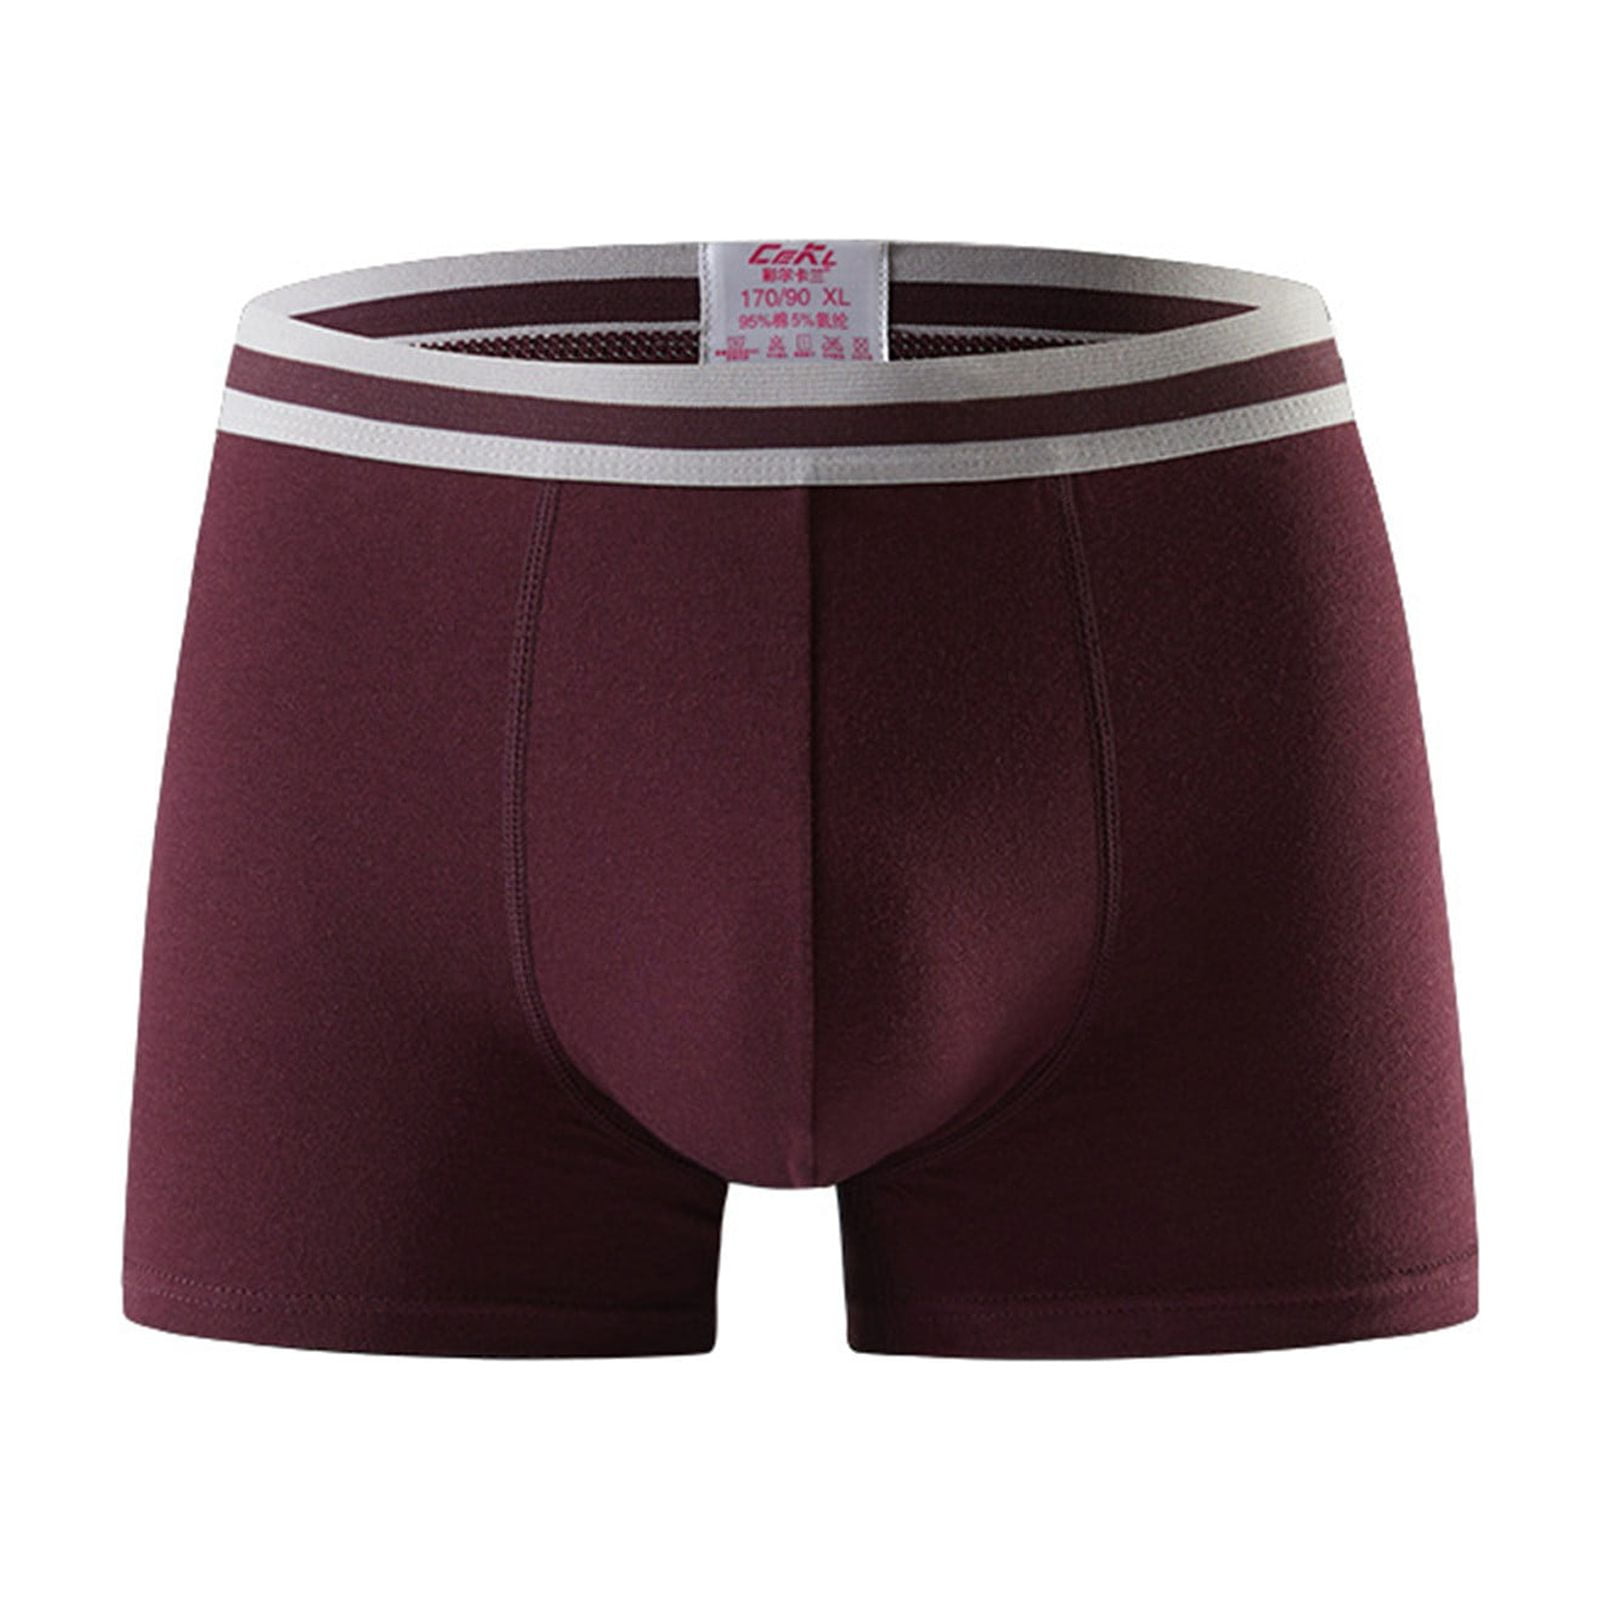 Durtebeua Boxer Briefs For Men Pack Cooling Men's Underwear Boxer ...